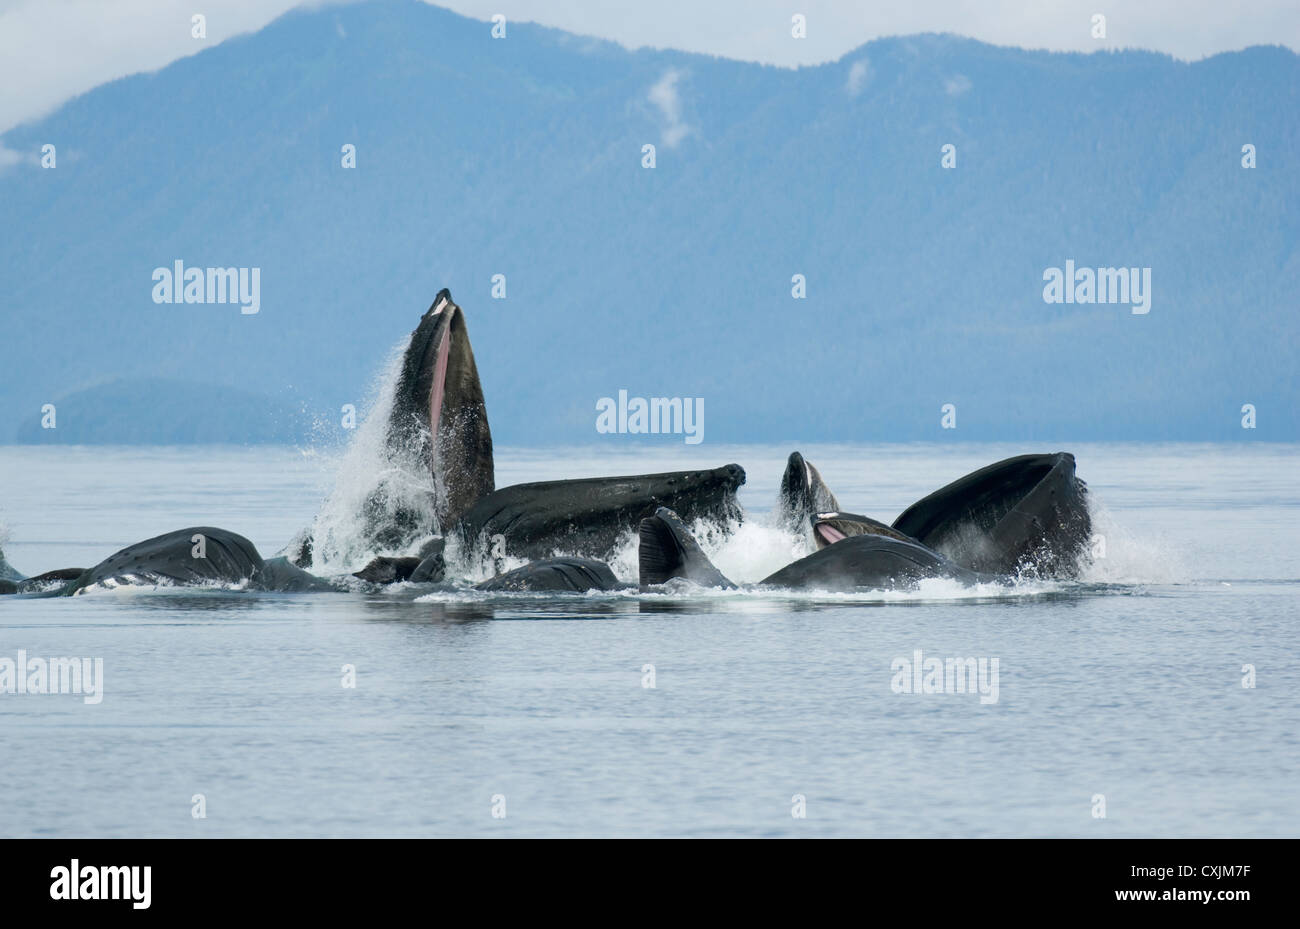 Les baleines à bosse (Megaptera novaeangliae) en collaboration l'alimentation, la 'compensation' Bulle-détroit Chatham, Alaska, Juillet Banque D'Images